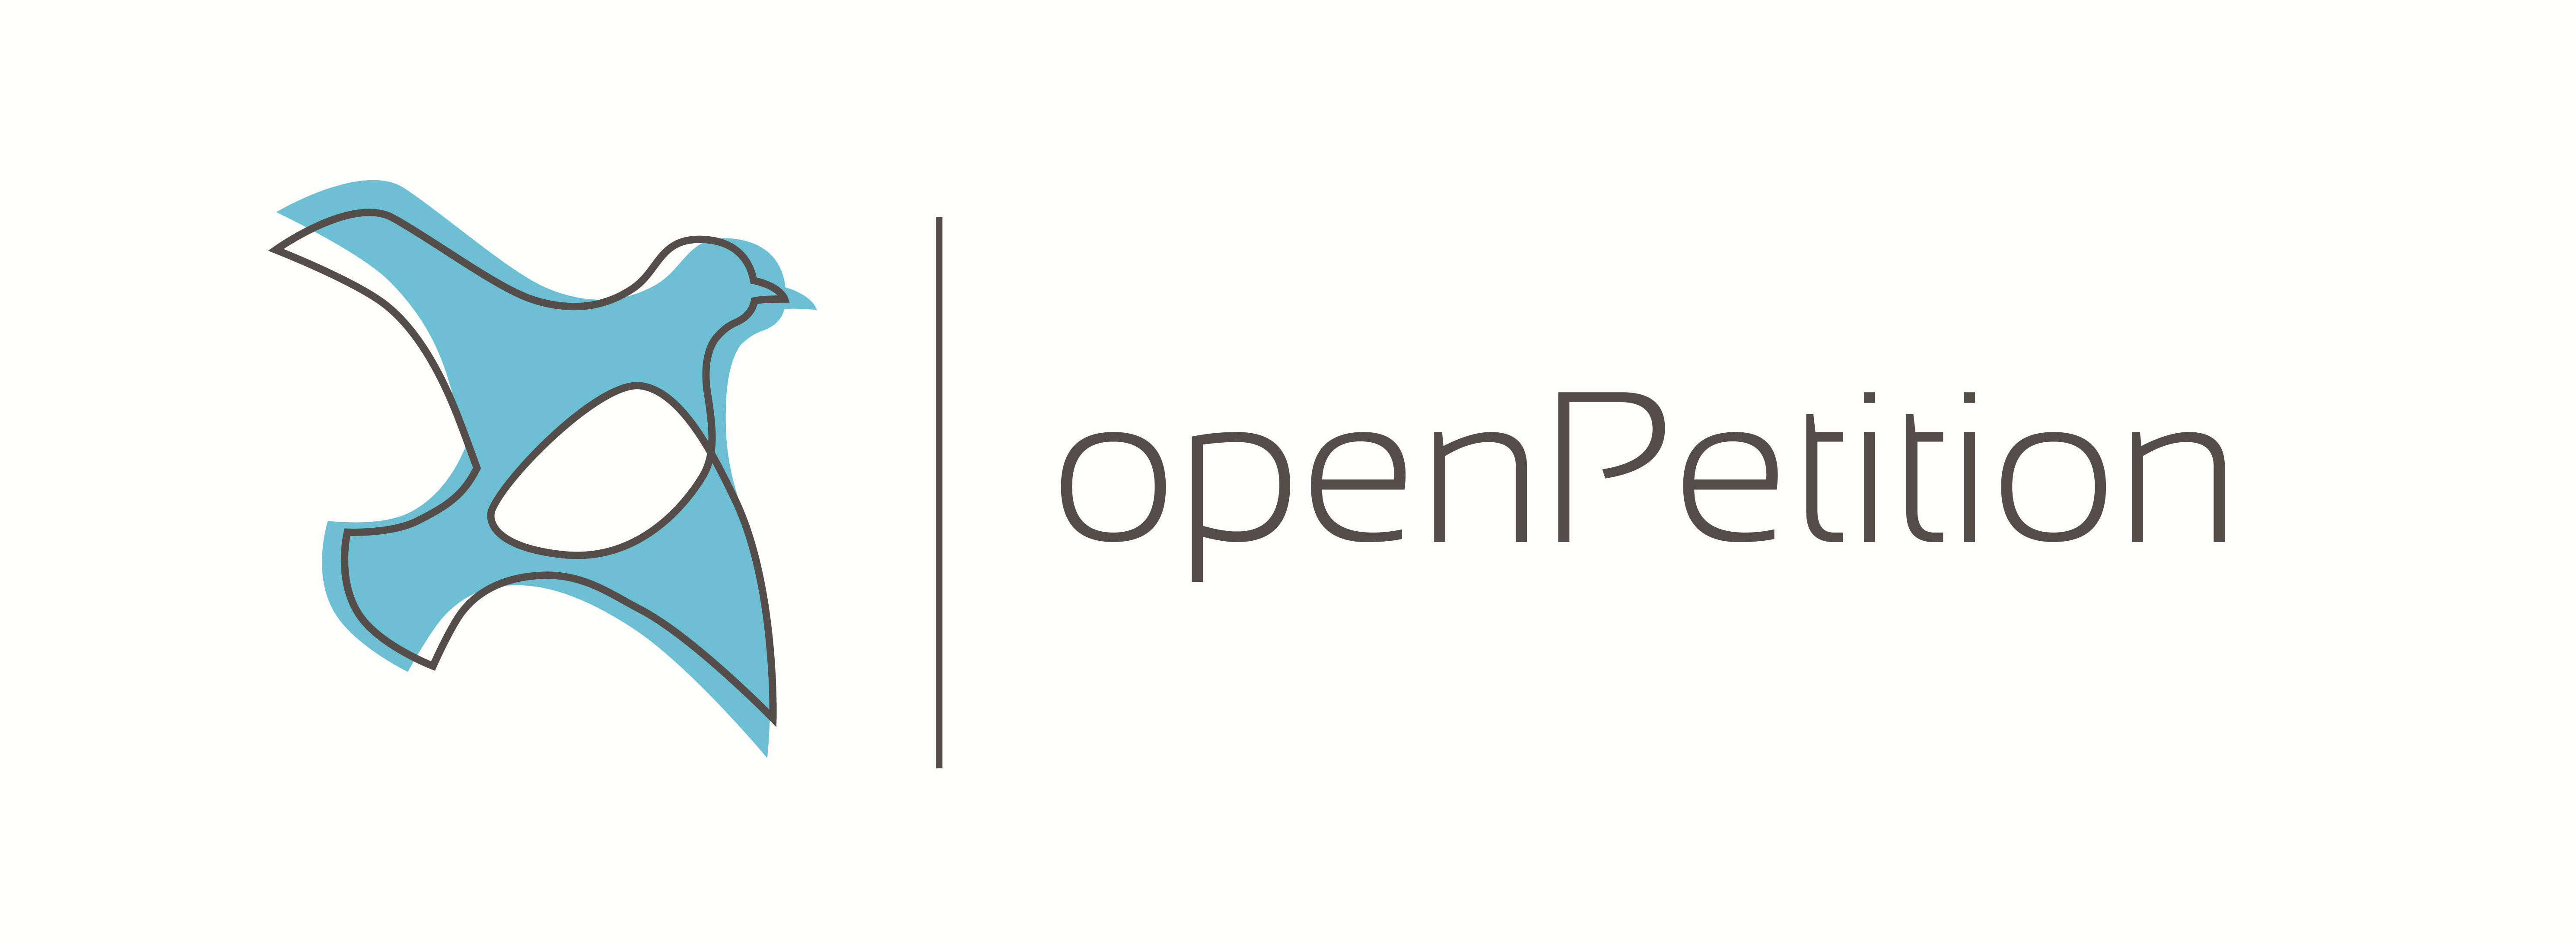 Bildergebnis für fotos vom logo von openpetition